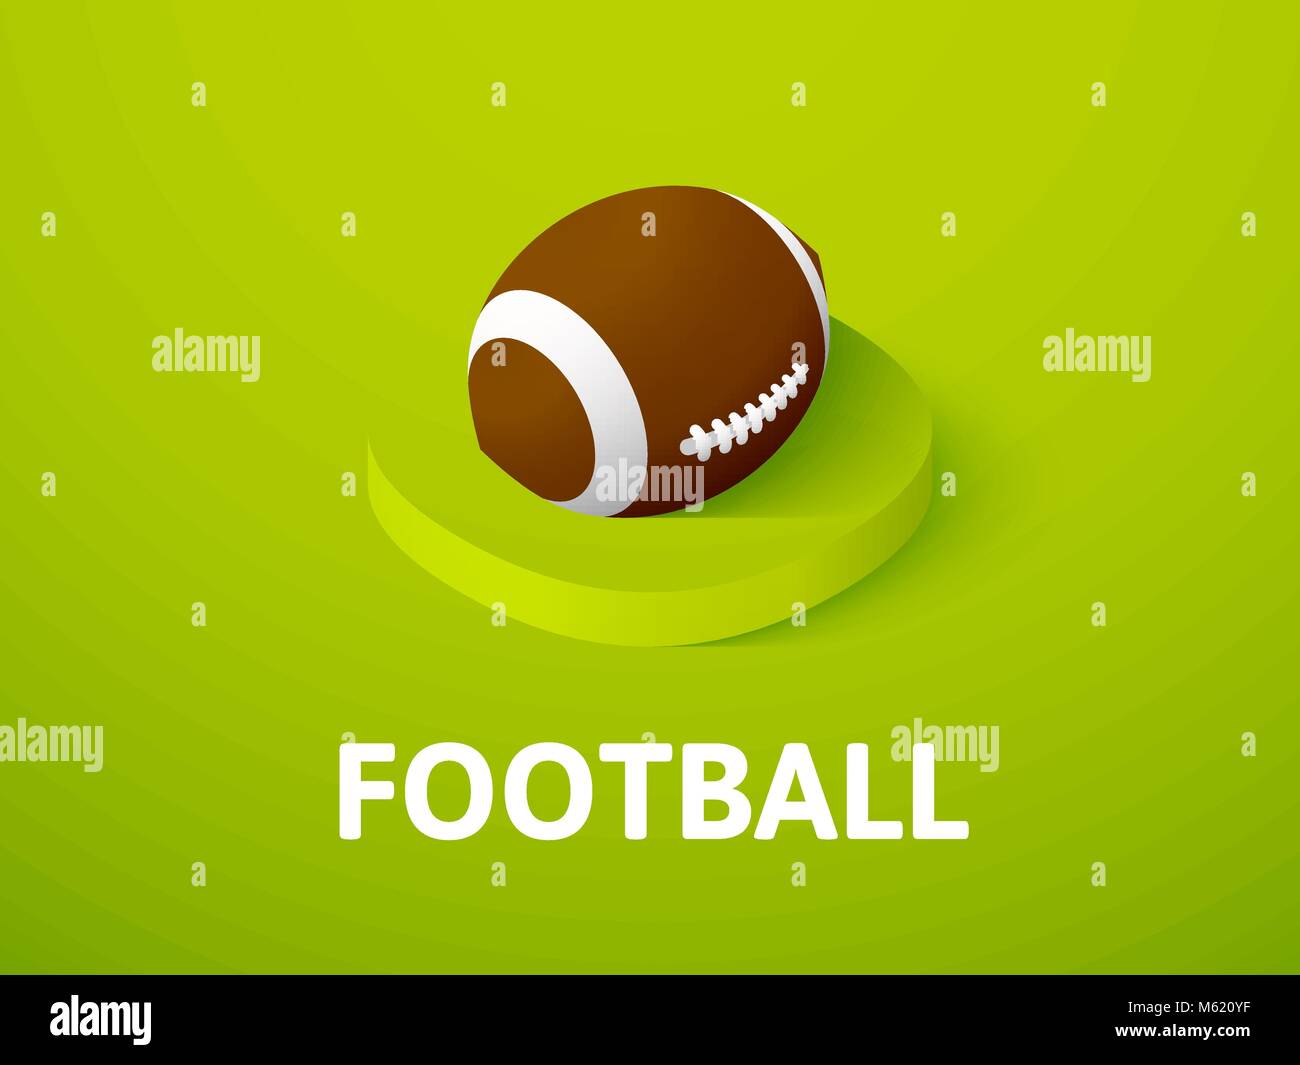 Football Icona isometrica, isolata su uno sfondo colorato Illustrazione Vettoriale